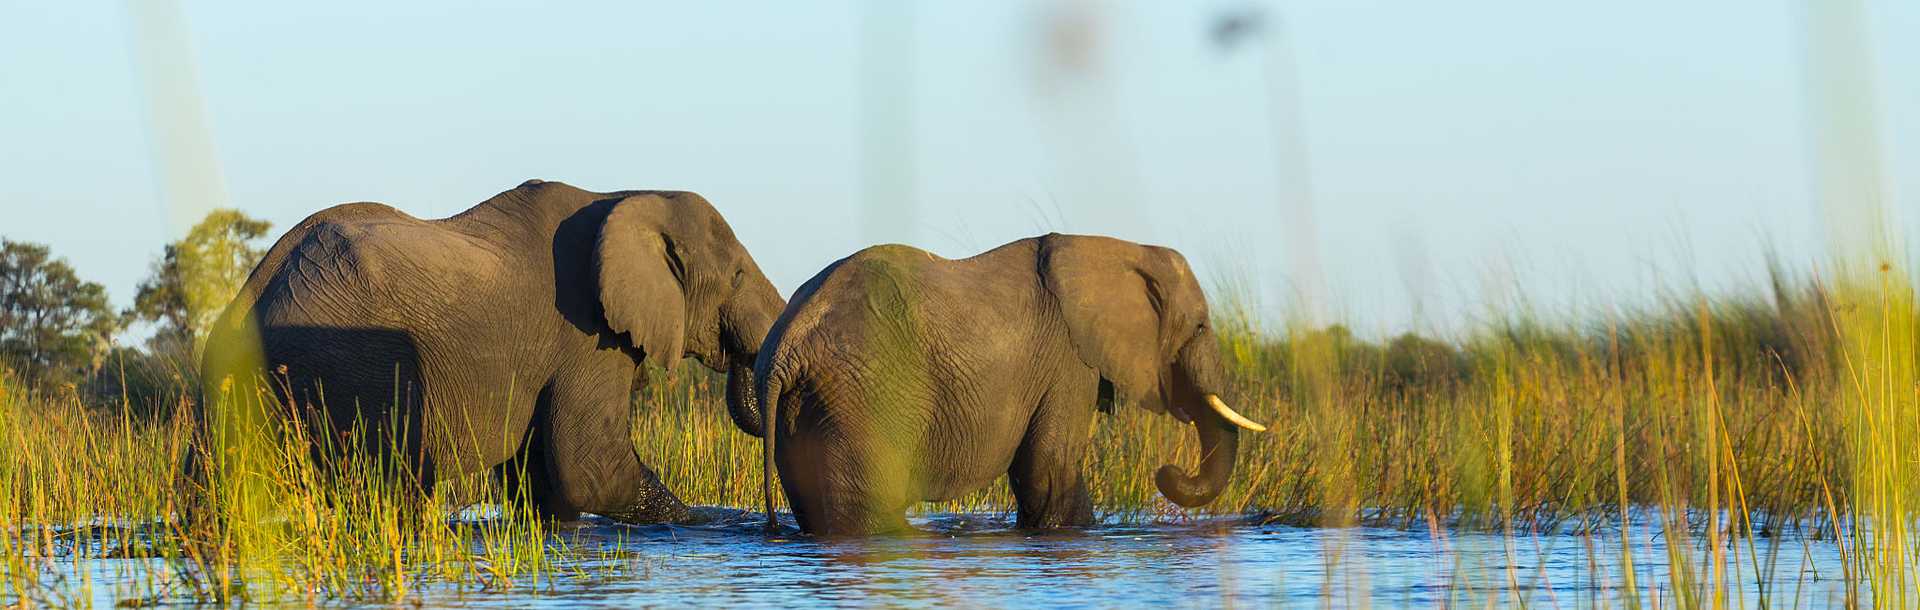 Elephants in the Okavango Delta, Botswana